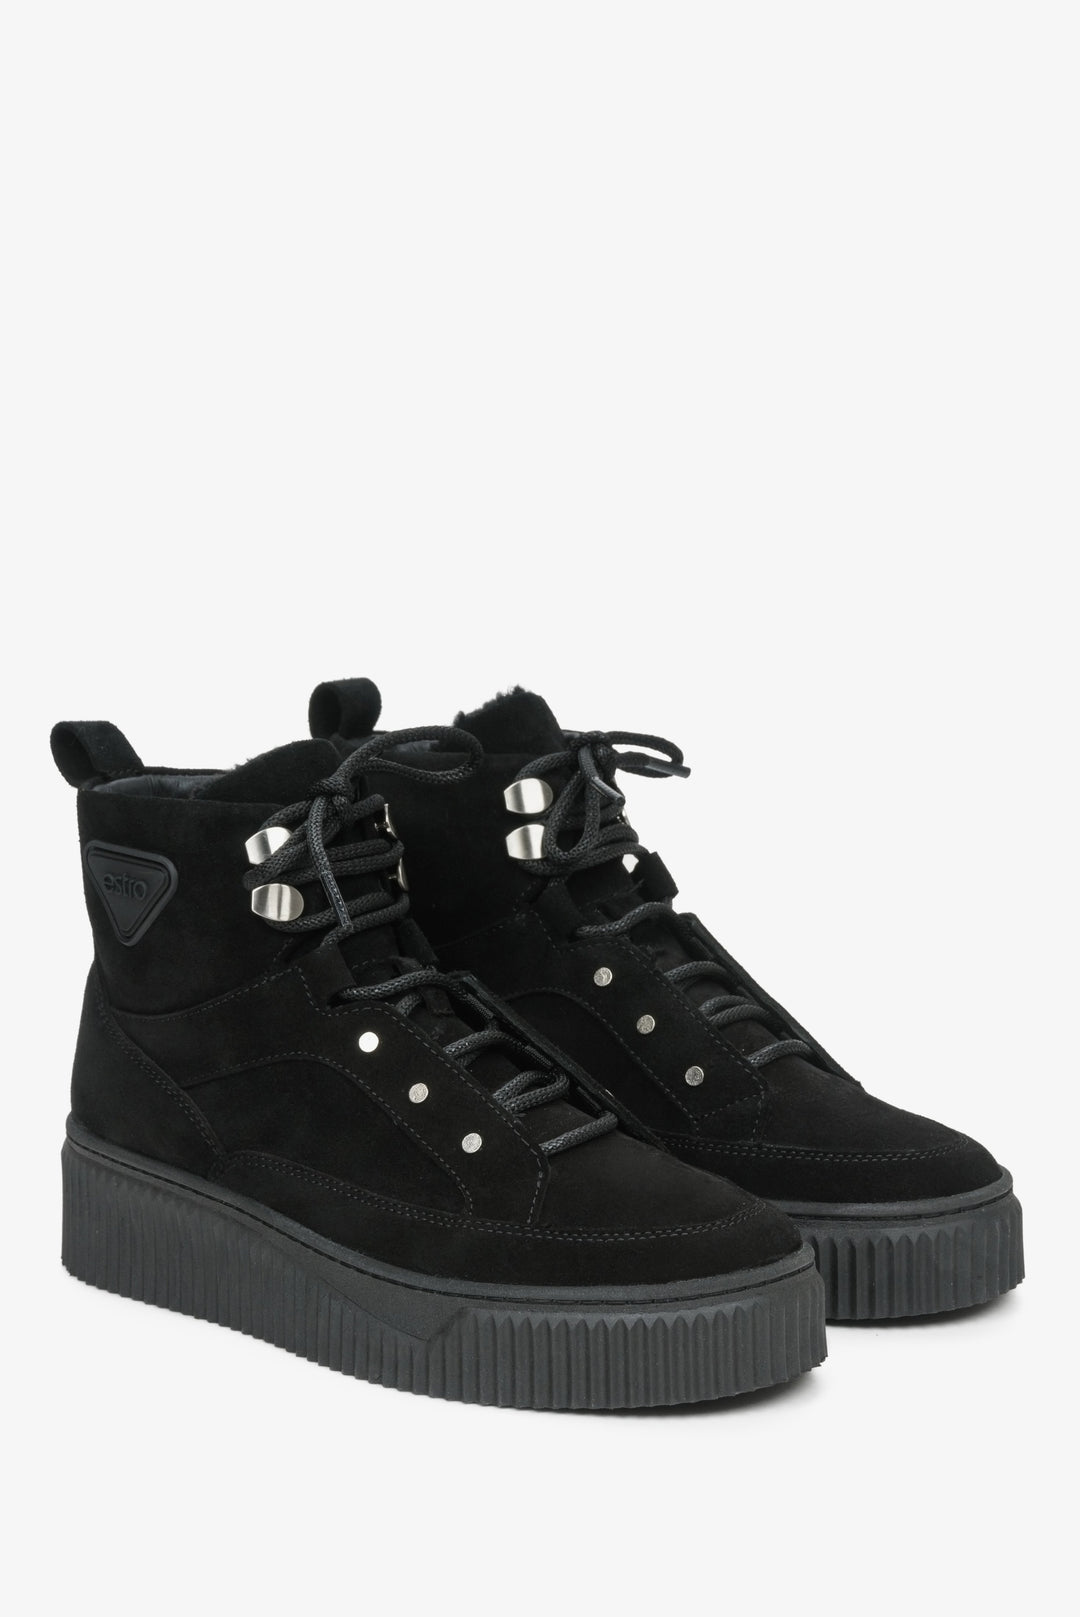 Damskie, wysokie sneakersy zimowe ze sznurowaniem marki Estro w kolorze czarnym.